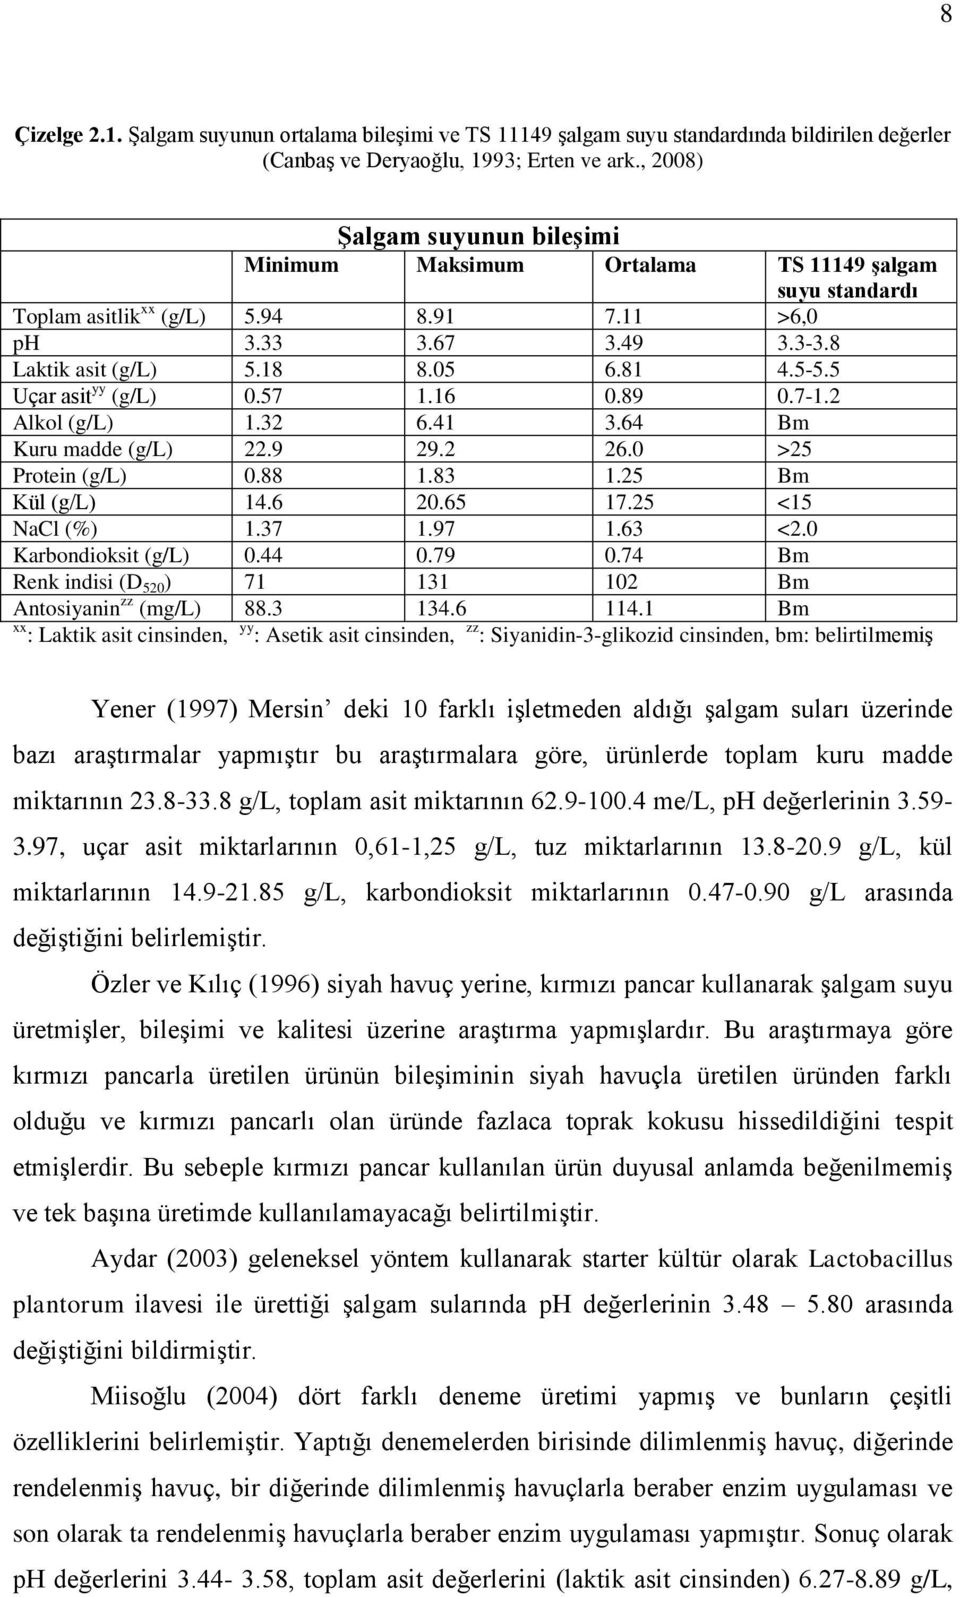 5 Uçar asit yy (g/l) 0.57 1.16 0.89 0.7-1.2 Alkol (g/l) 1.32 6.41 3.64 Bm Kuru madde (g/l) 22.9 29.2 26.0 >25 Protein (g/l) 0.88 1.83 1.25 Bm Kül (g/l) 14.6 20.65 17.25 <15 NaCl (%) 1.37 1.97 1.63 <2.